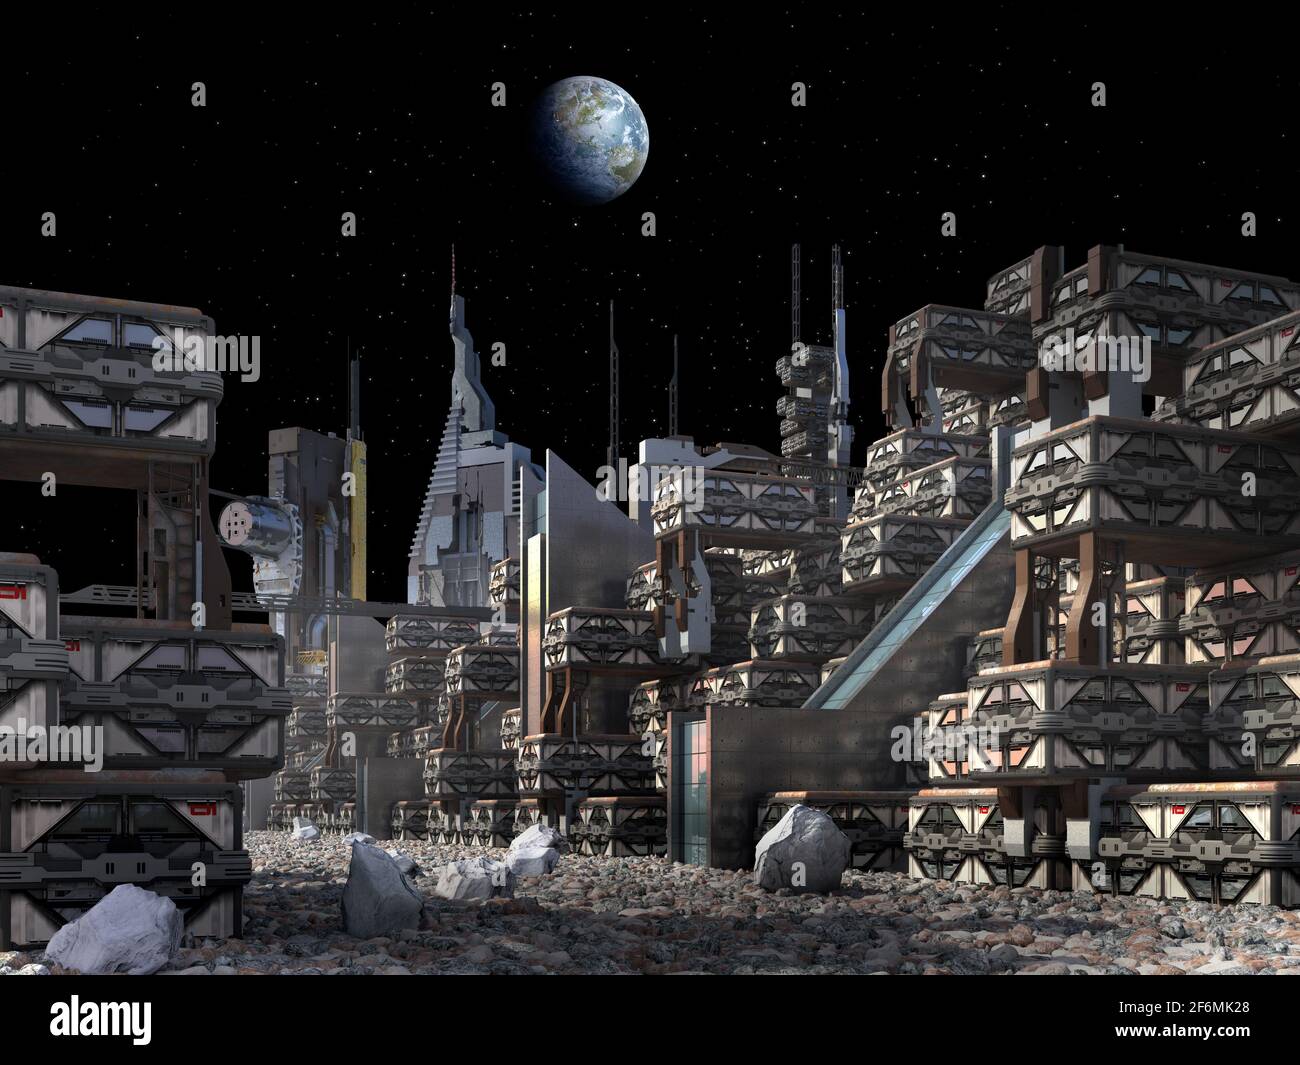 Illustrazione in 3D di una colonia sulla Luna con grattacieli e architettura industriale, modulare, per fantascienza o esplorazioni spaziali. Foto Stock